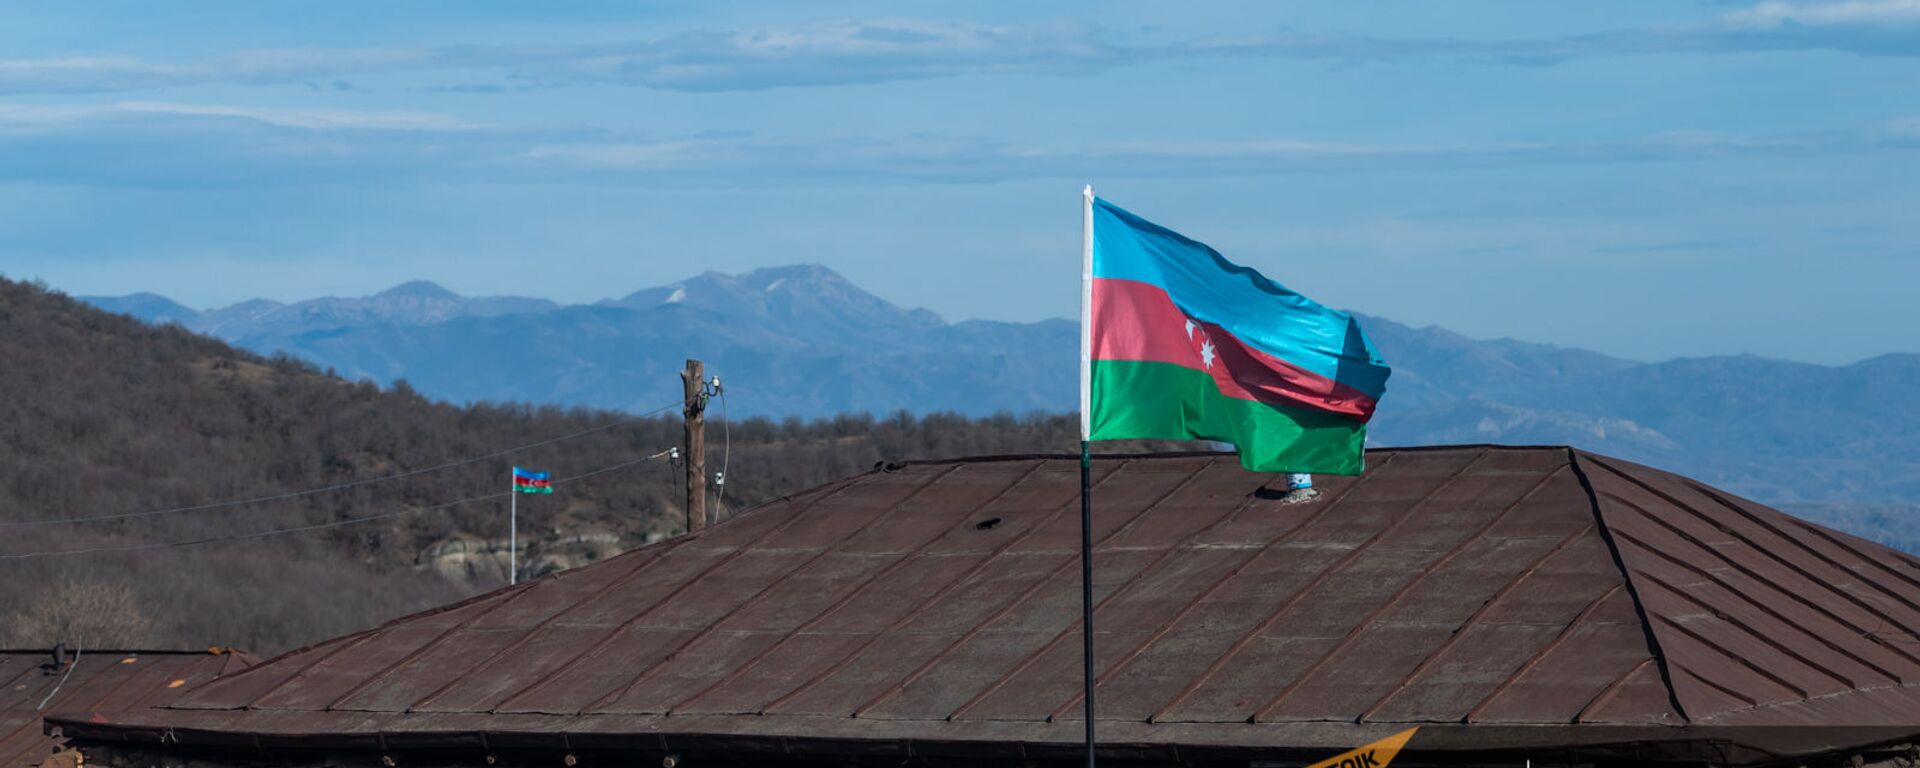 Азербайджанские флаги в селе Шурнух Сюникской области - Sputnik Армения, 1920, 26.05.2021